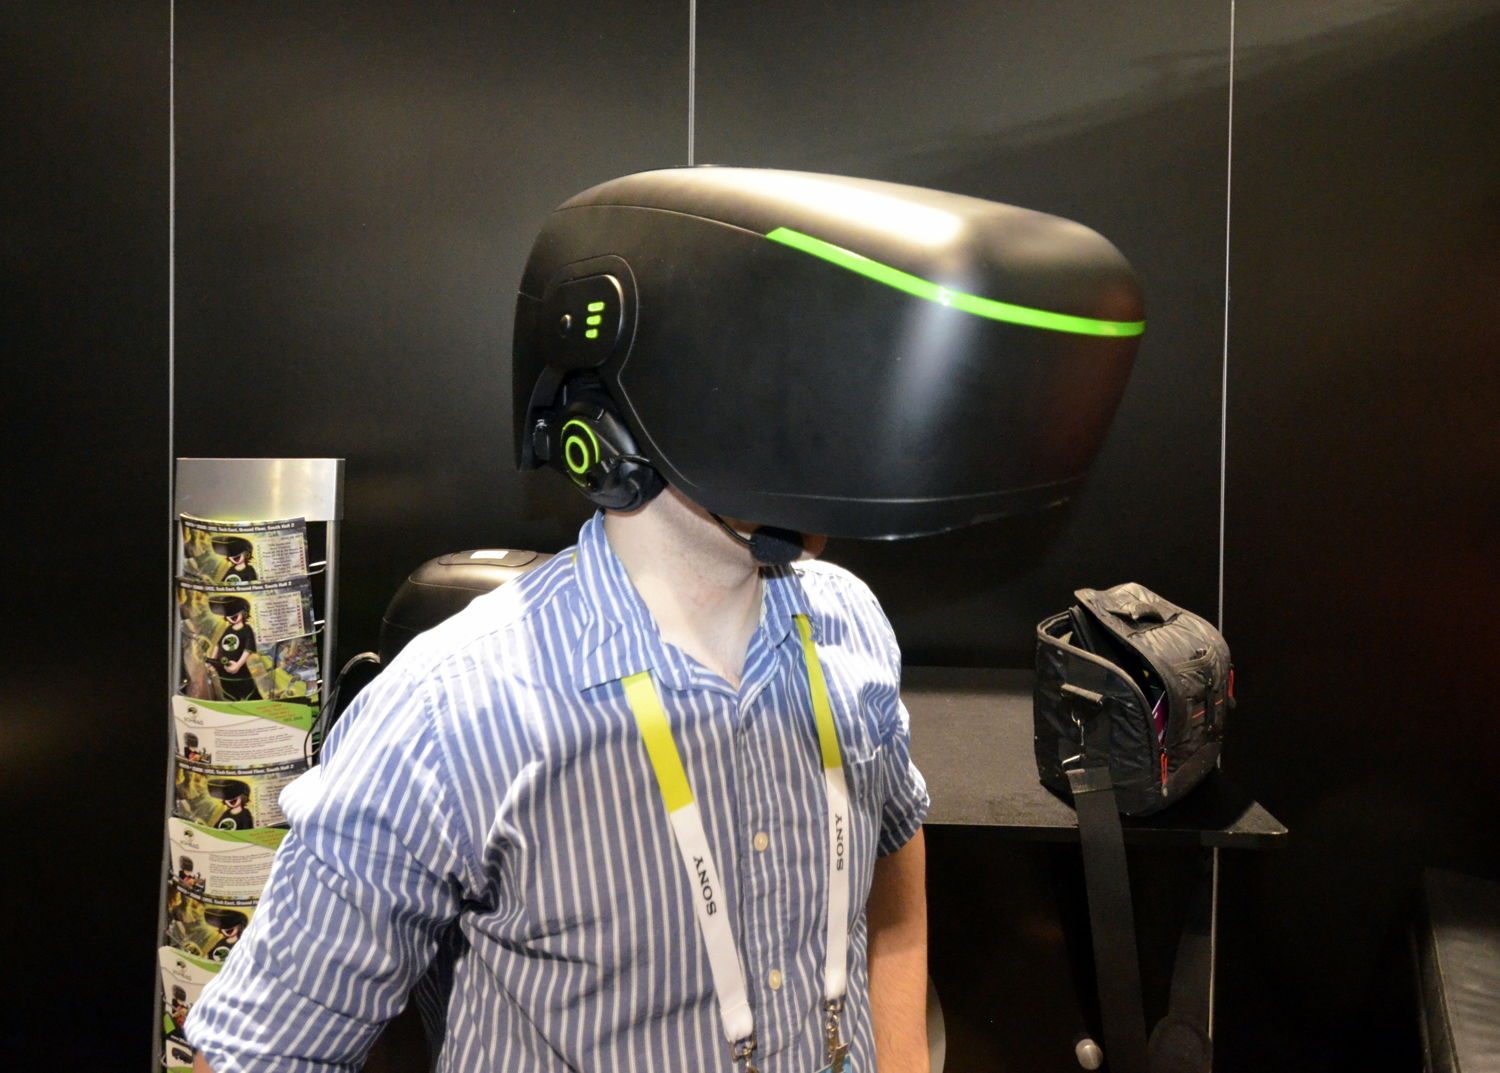 Vr classic. VR class hr11. Виртуальная реальность с полным погружением. Оборудование для погружения в виртуальную реальность. VR class оборудование.